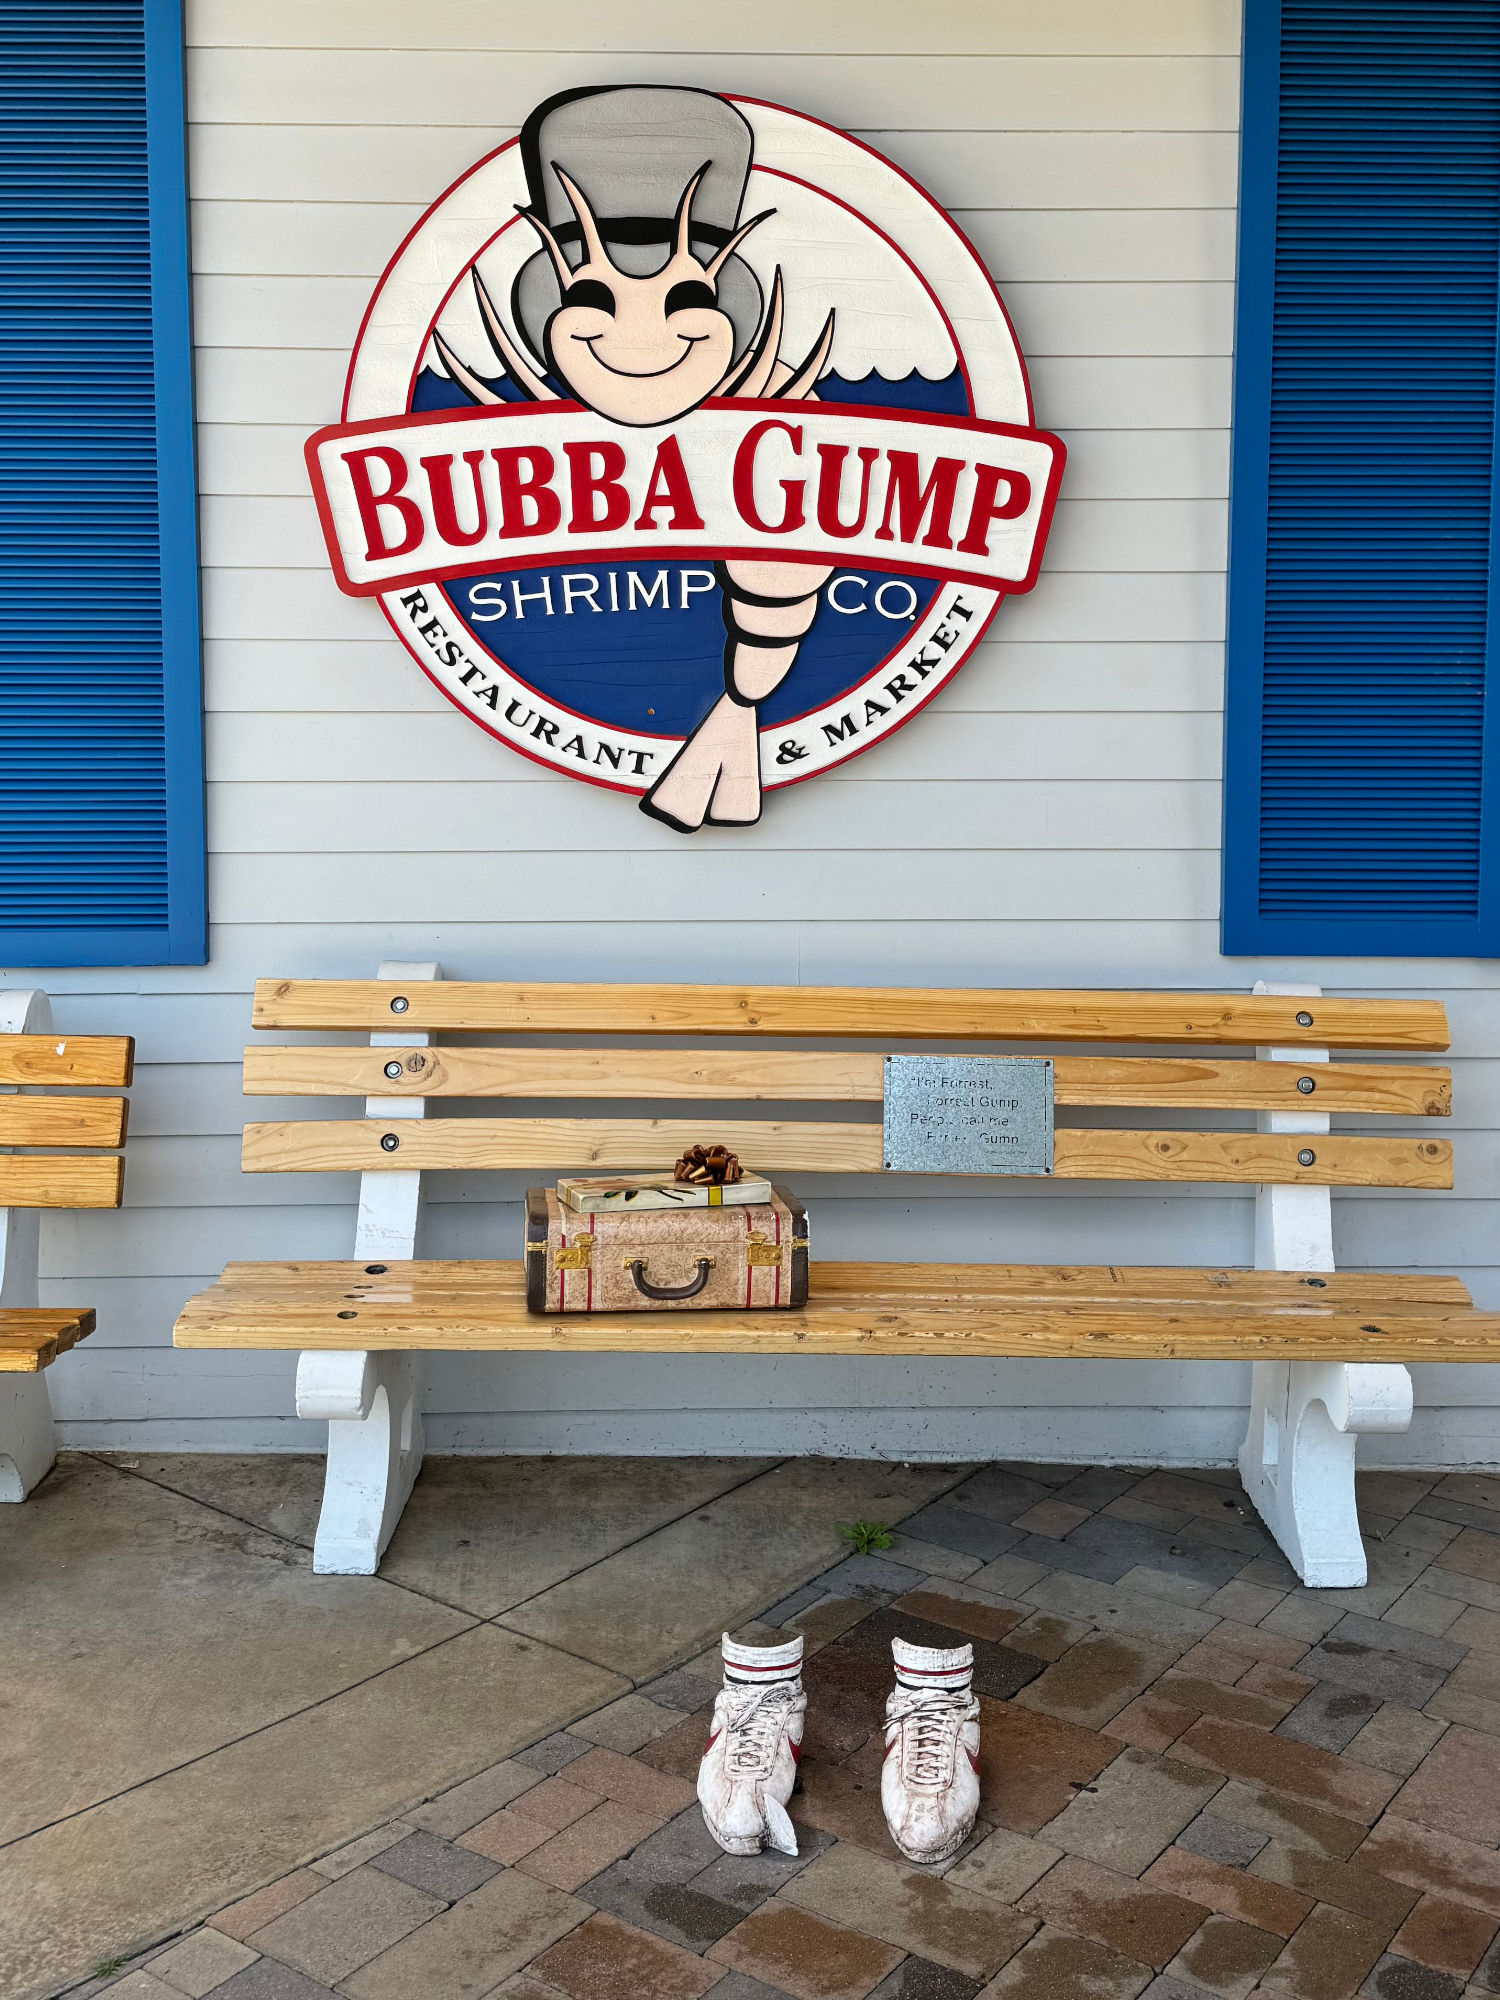 Bubba Gump The Bench